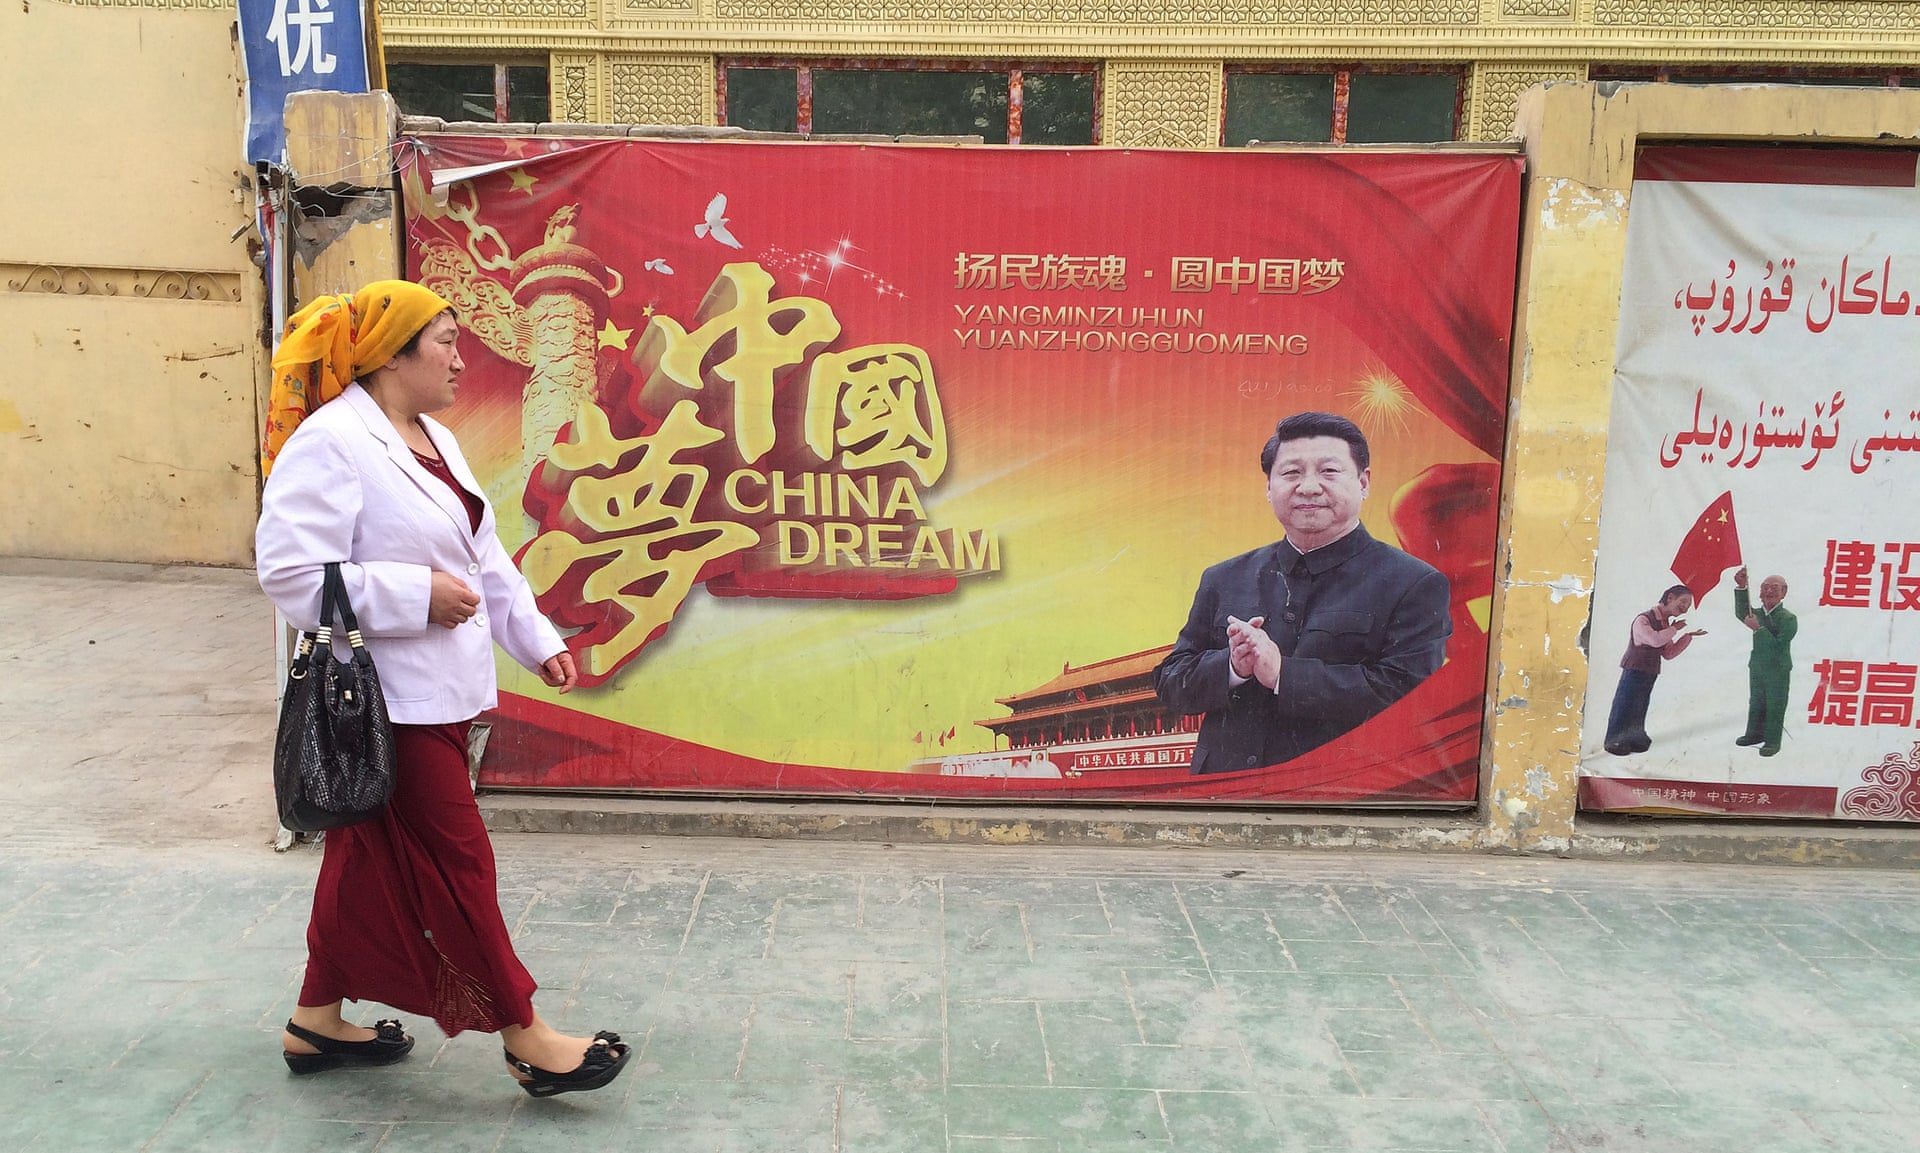 A Uighur woman china dream